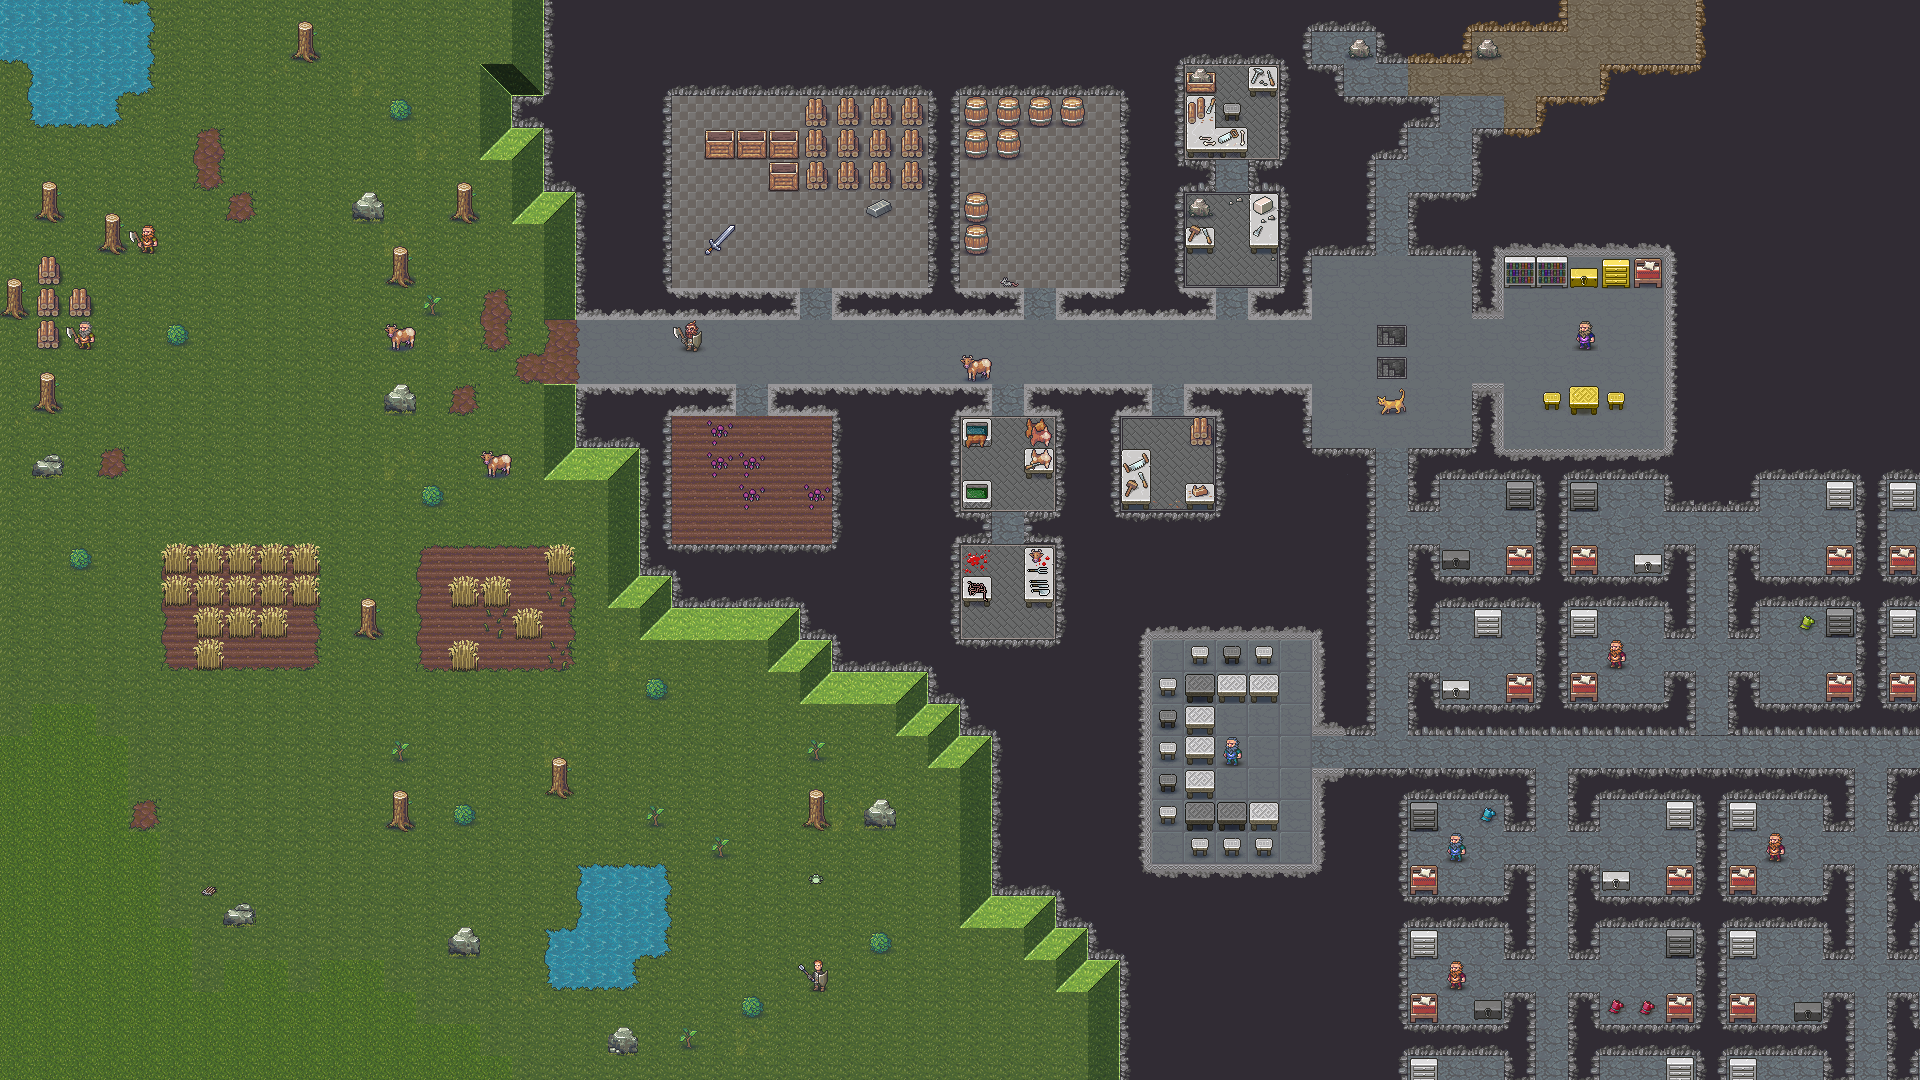 Dwarven Village: Dwarf Fortress RPG v1.0 MOD APK -  - Android  & iOS MODs, Mobile Games & Apps